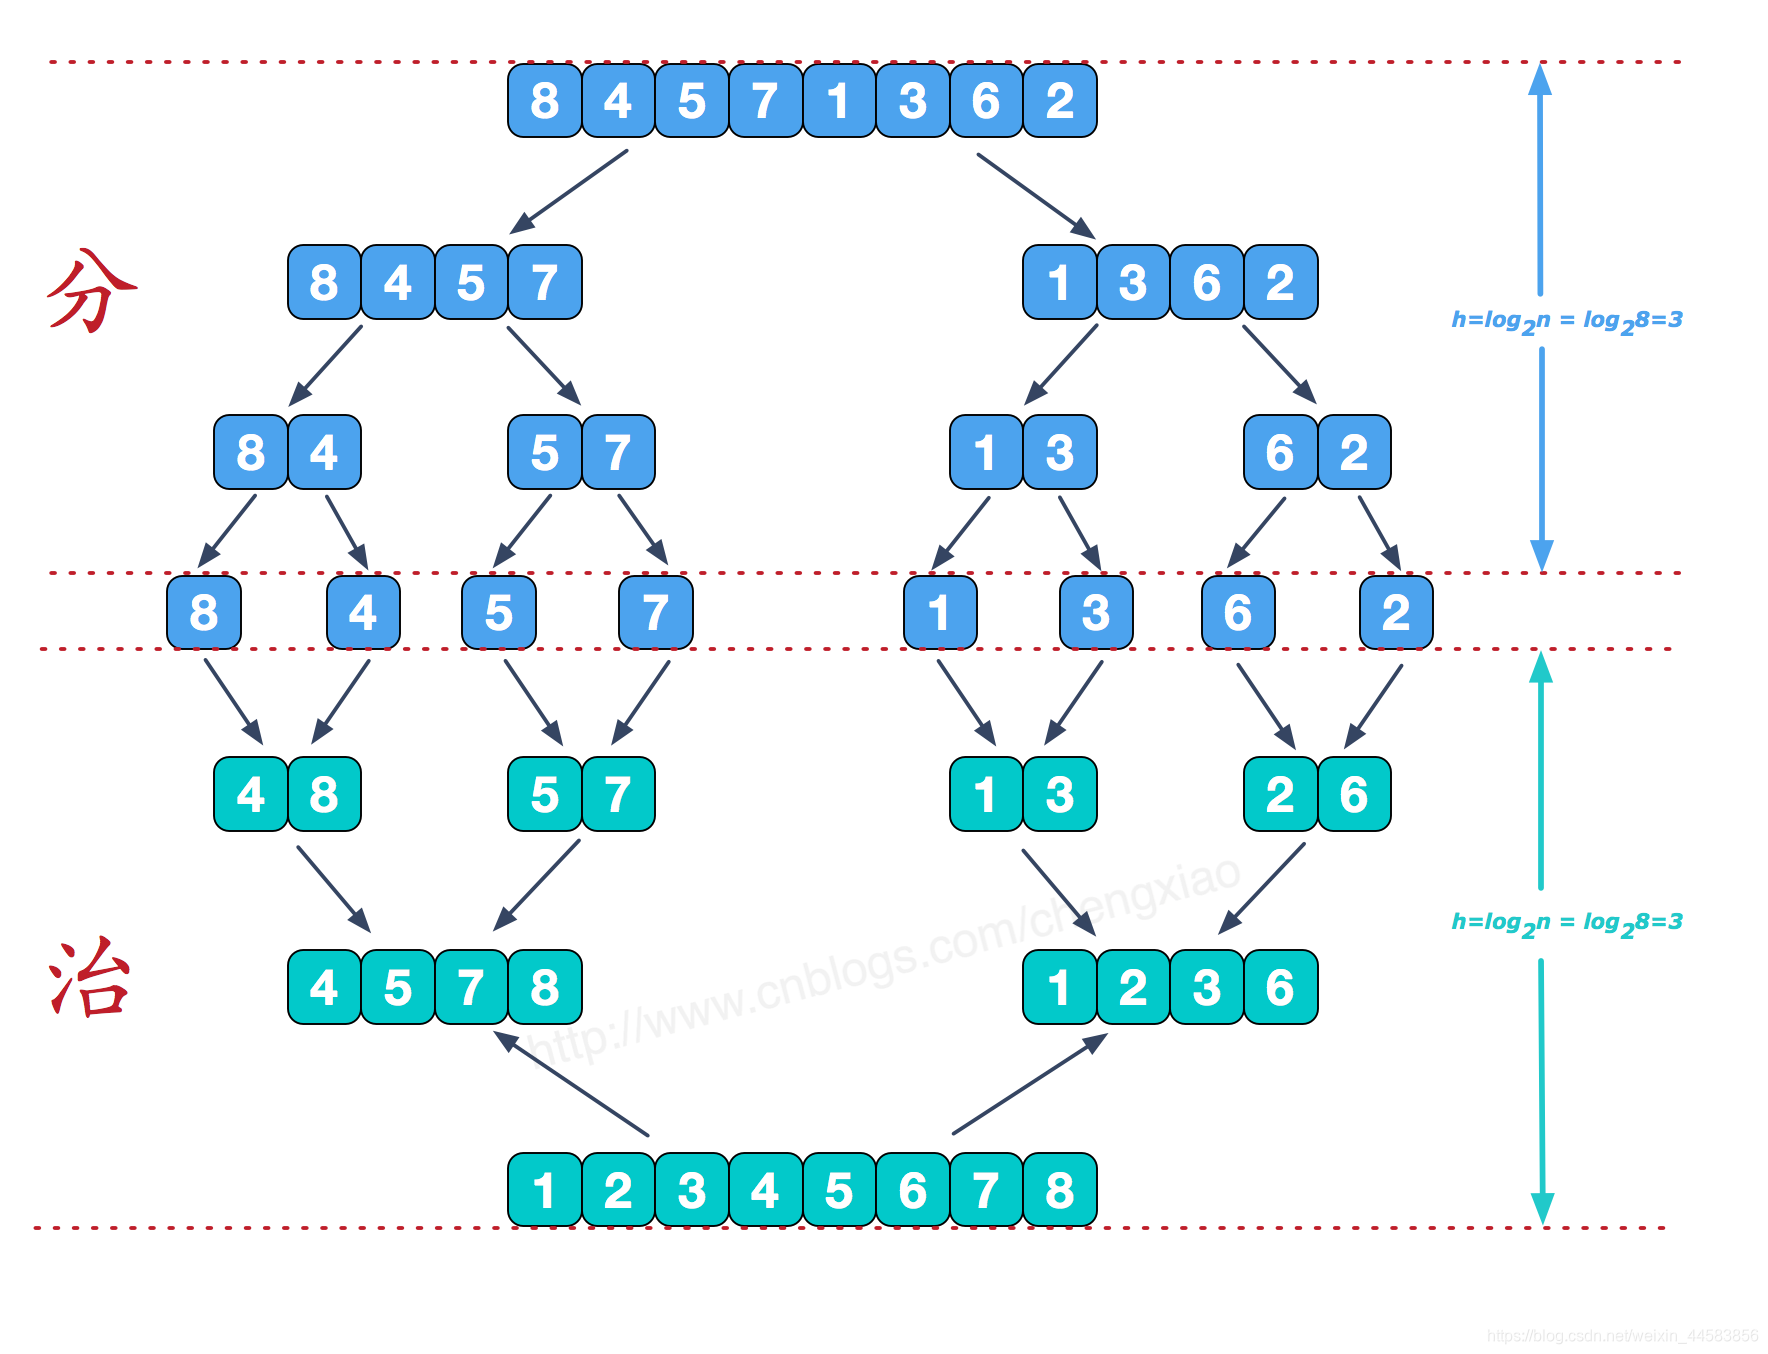 可以看到这种结构很像一棵完全二叉树，本文的归并排序我们采用递归去实现（也可采用迭代的方式去实现）。分阶段可以理解为就是递归拆分子序列的过程，递归深度为log2n。